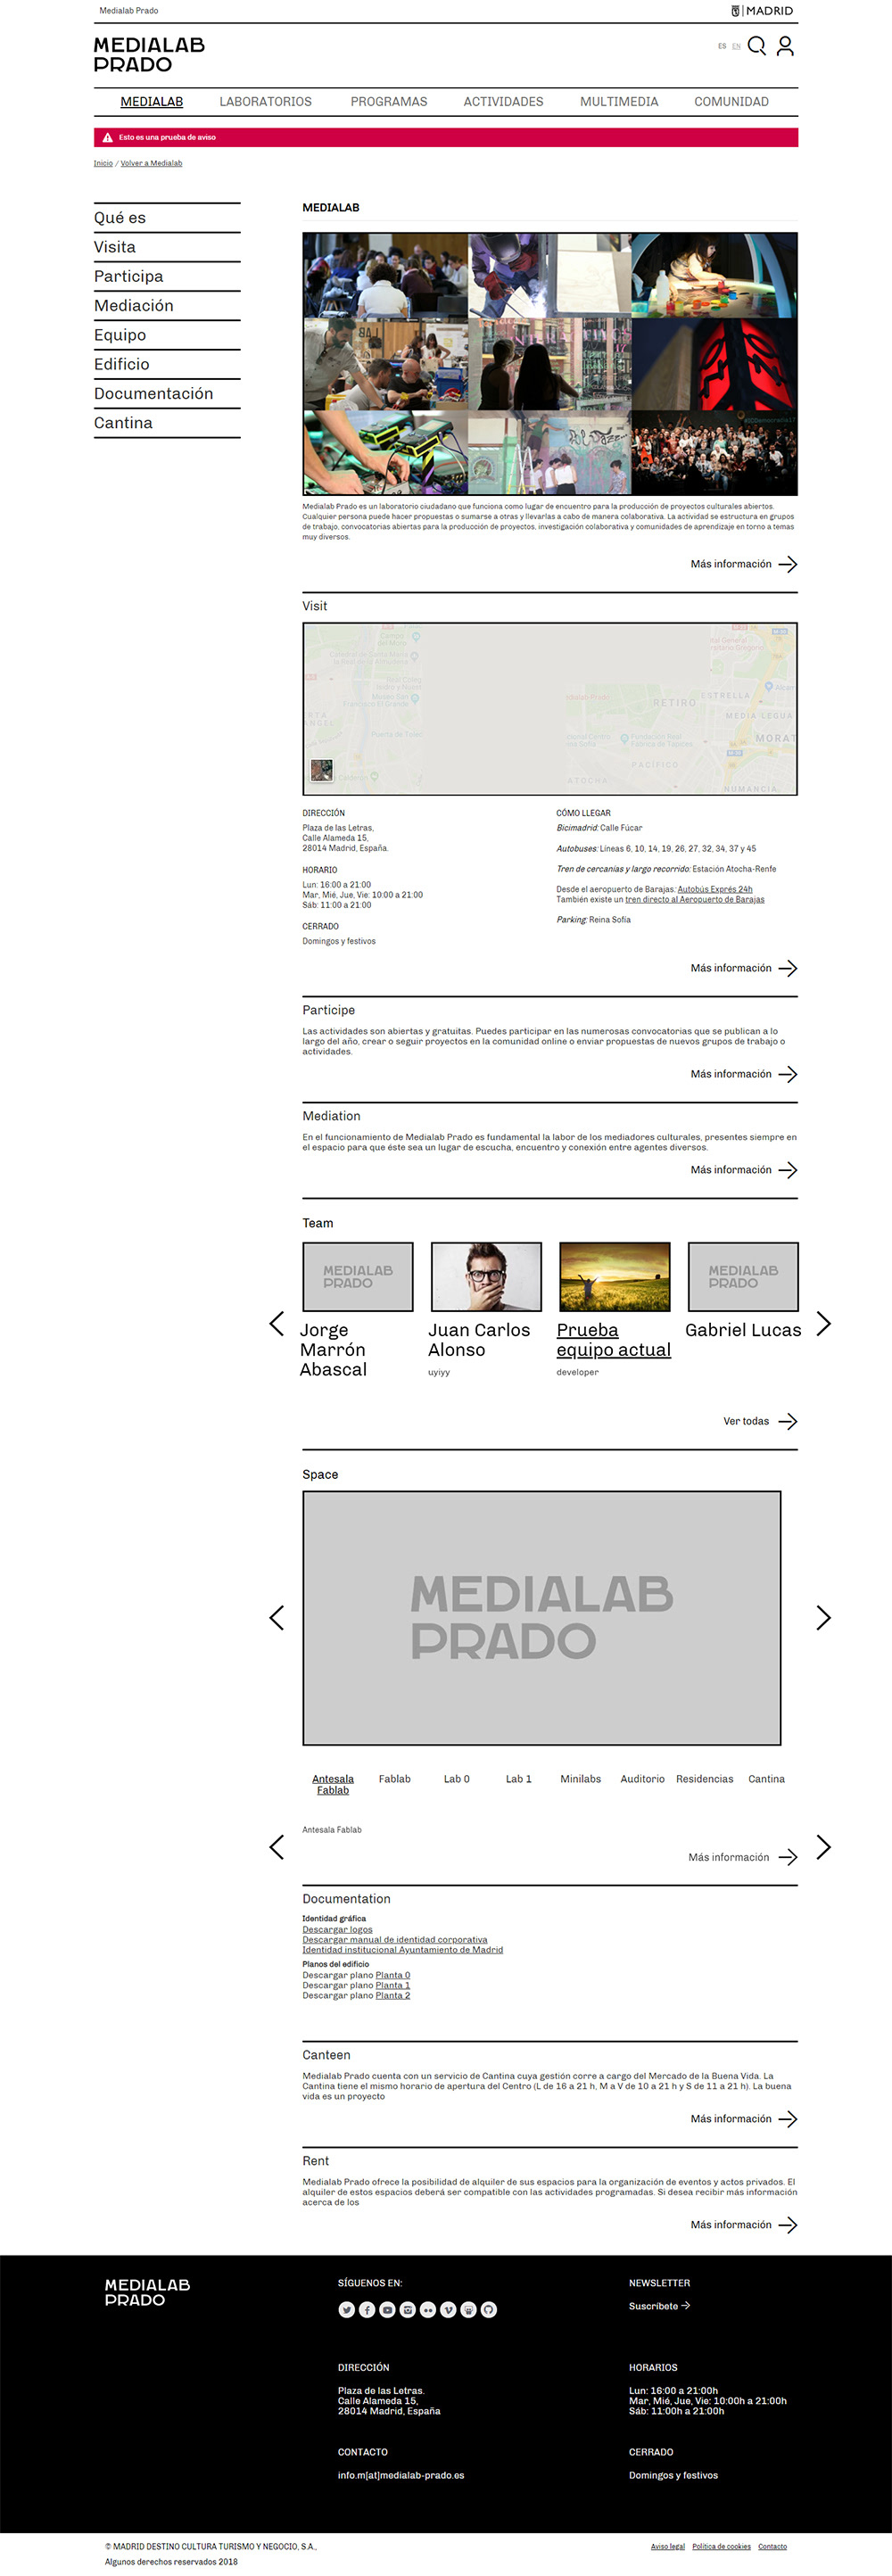 Diseño web maquetación Responsive Design ux UI interfaces Diseño Navideño front webs corporativas Slideshows